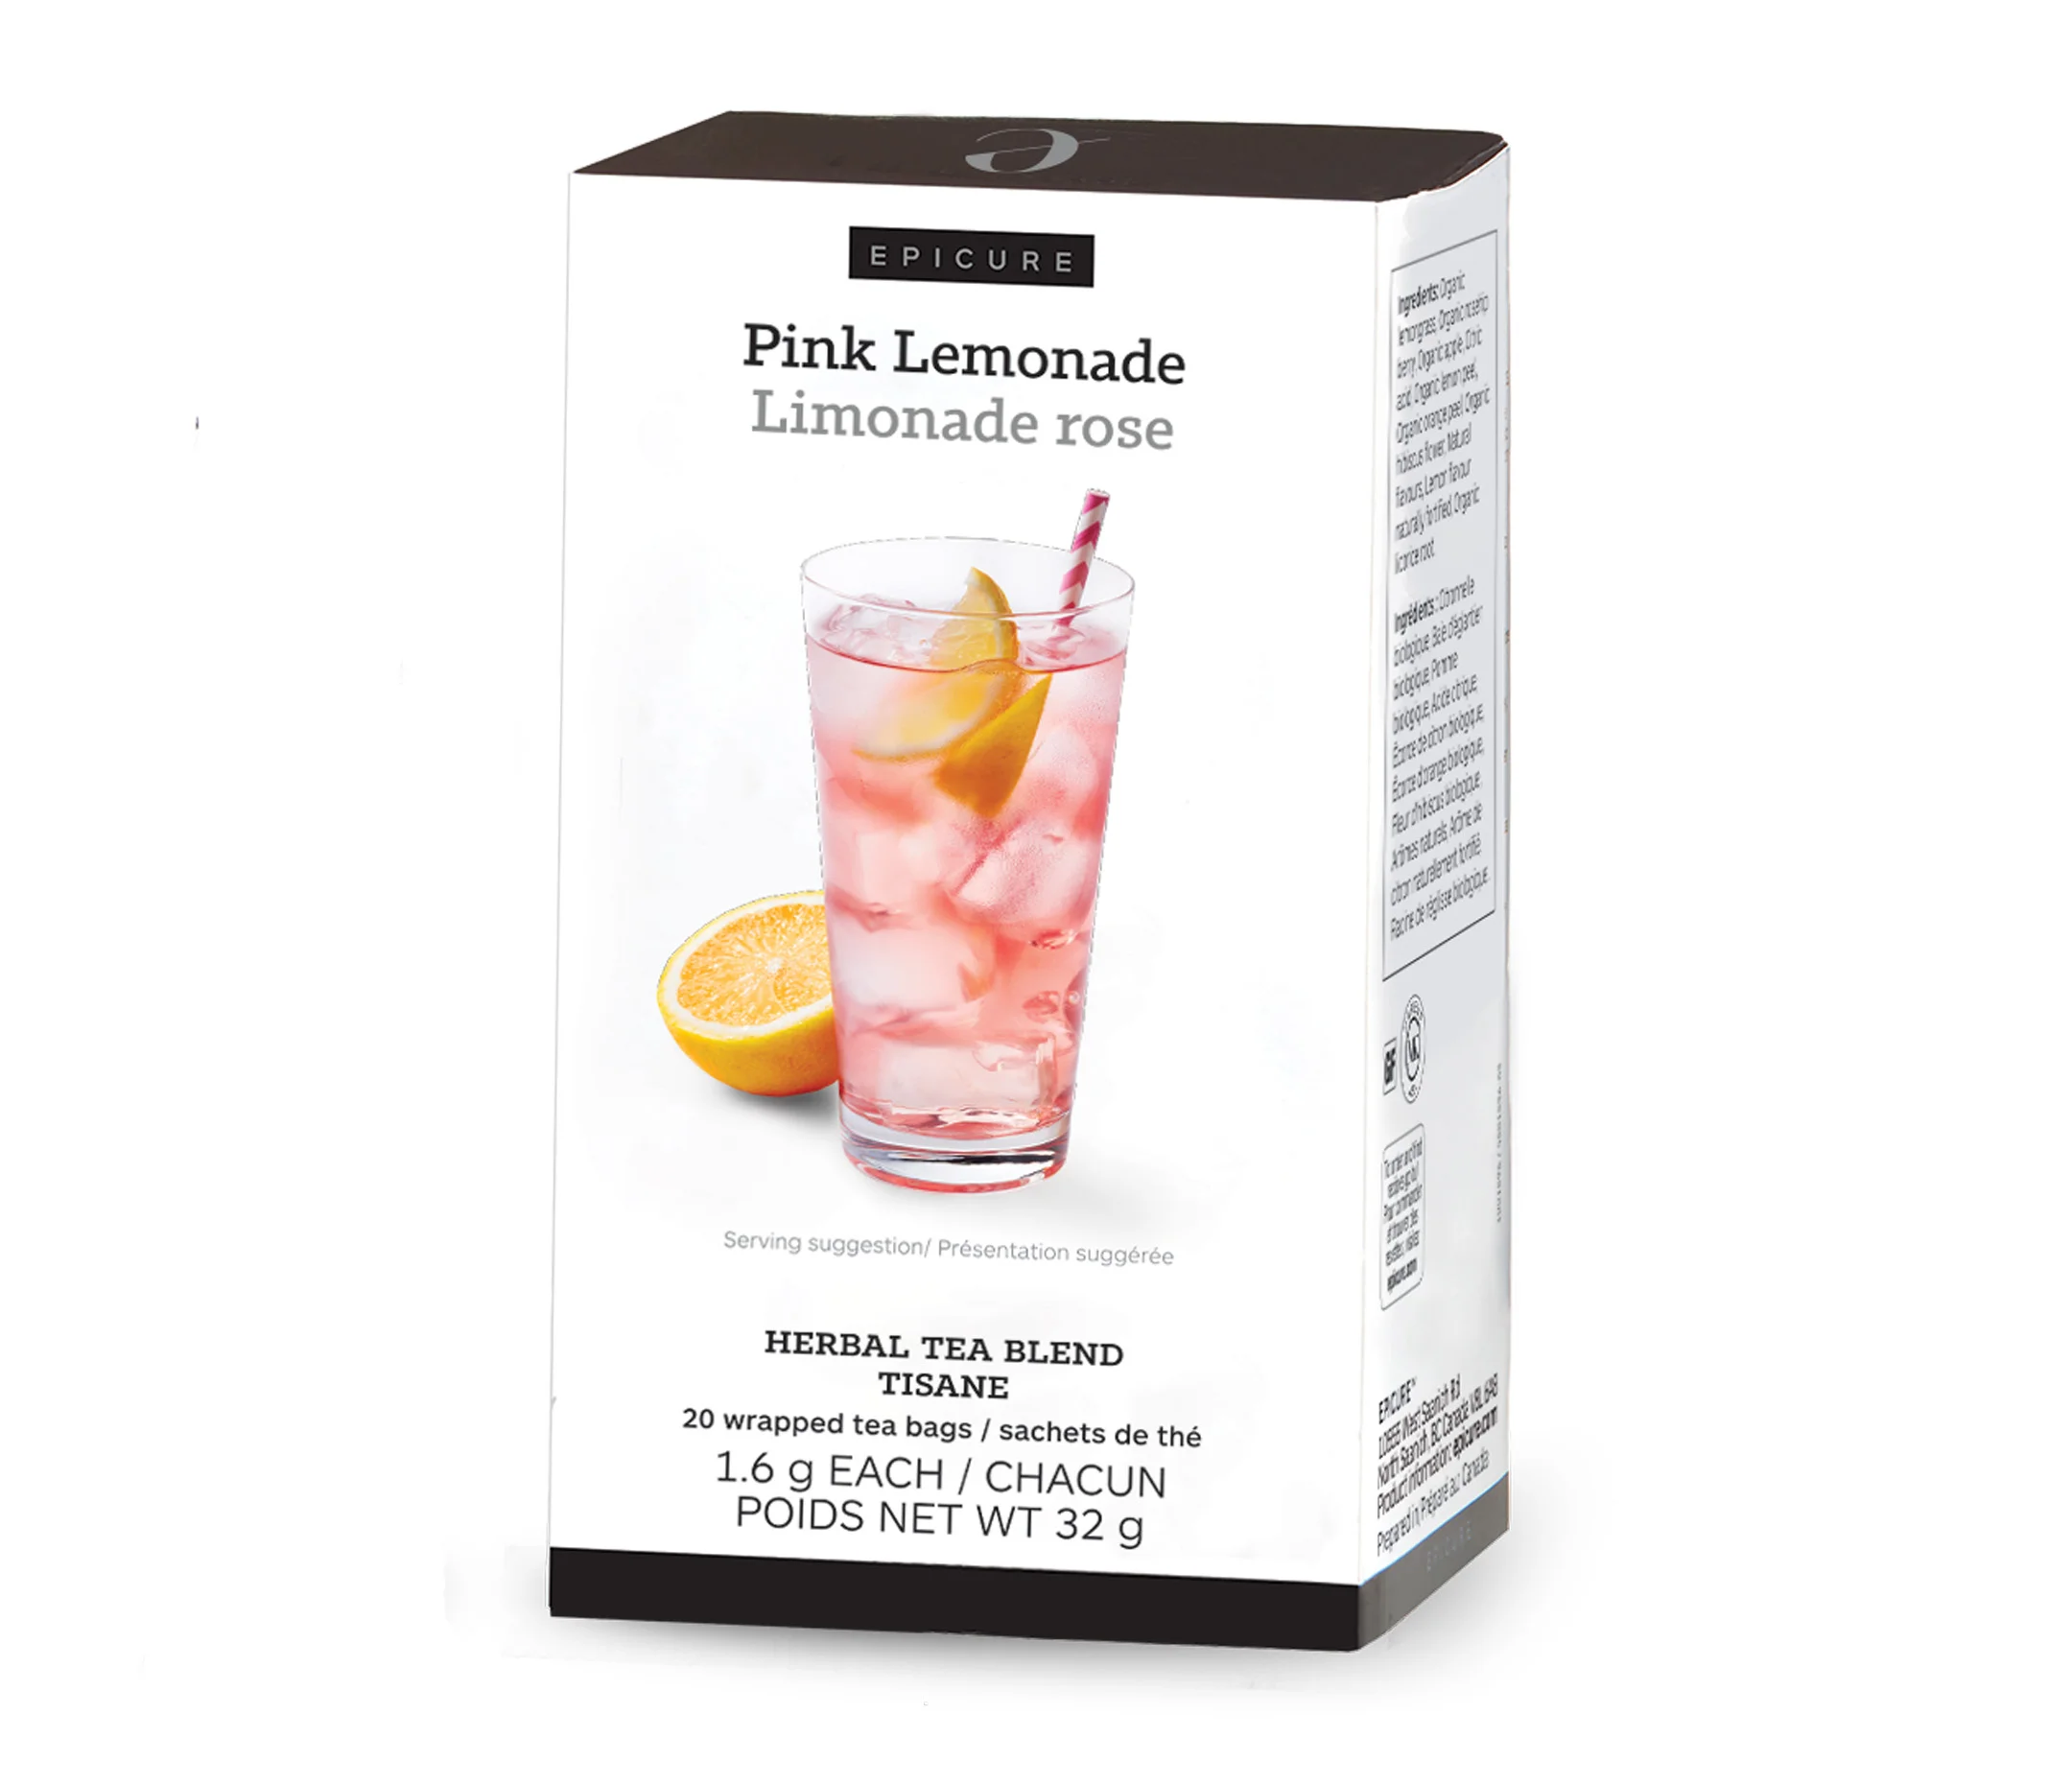 Pink Lemonade Herbal Tea Blend